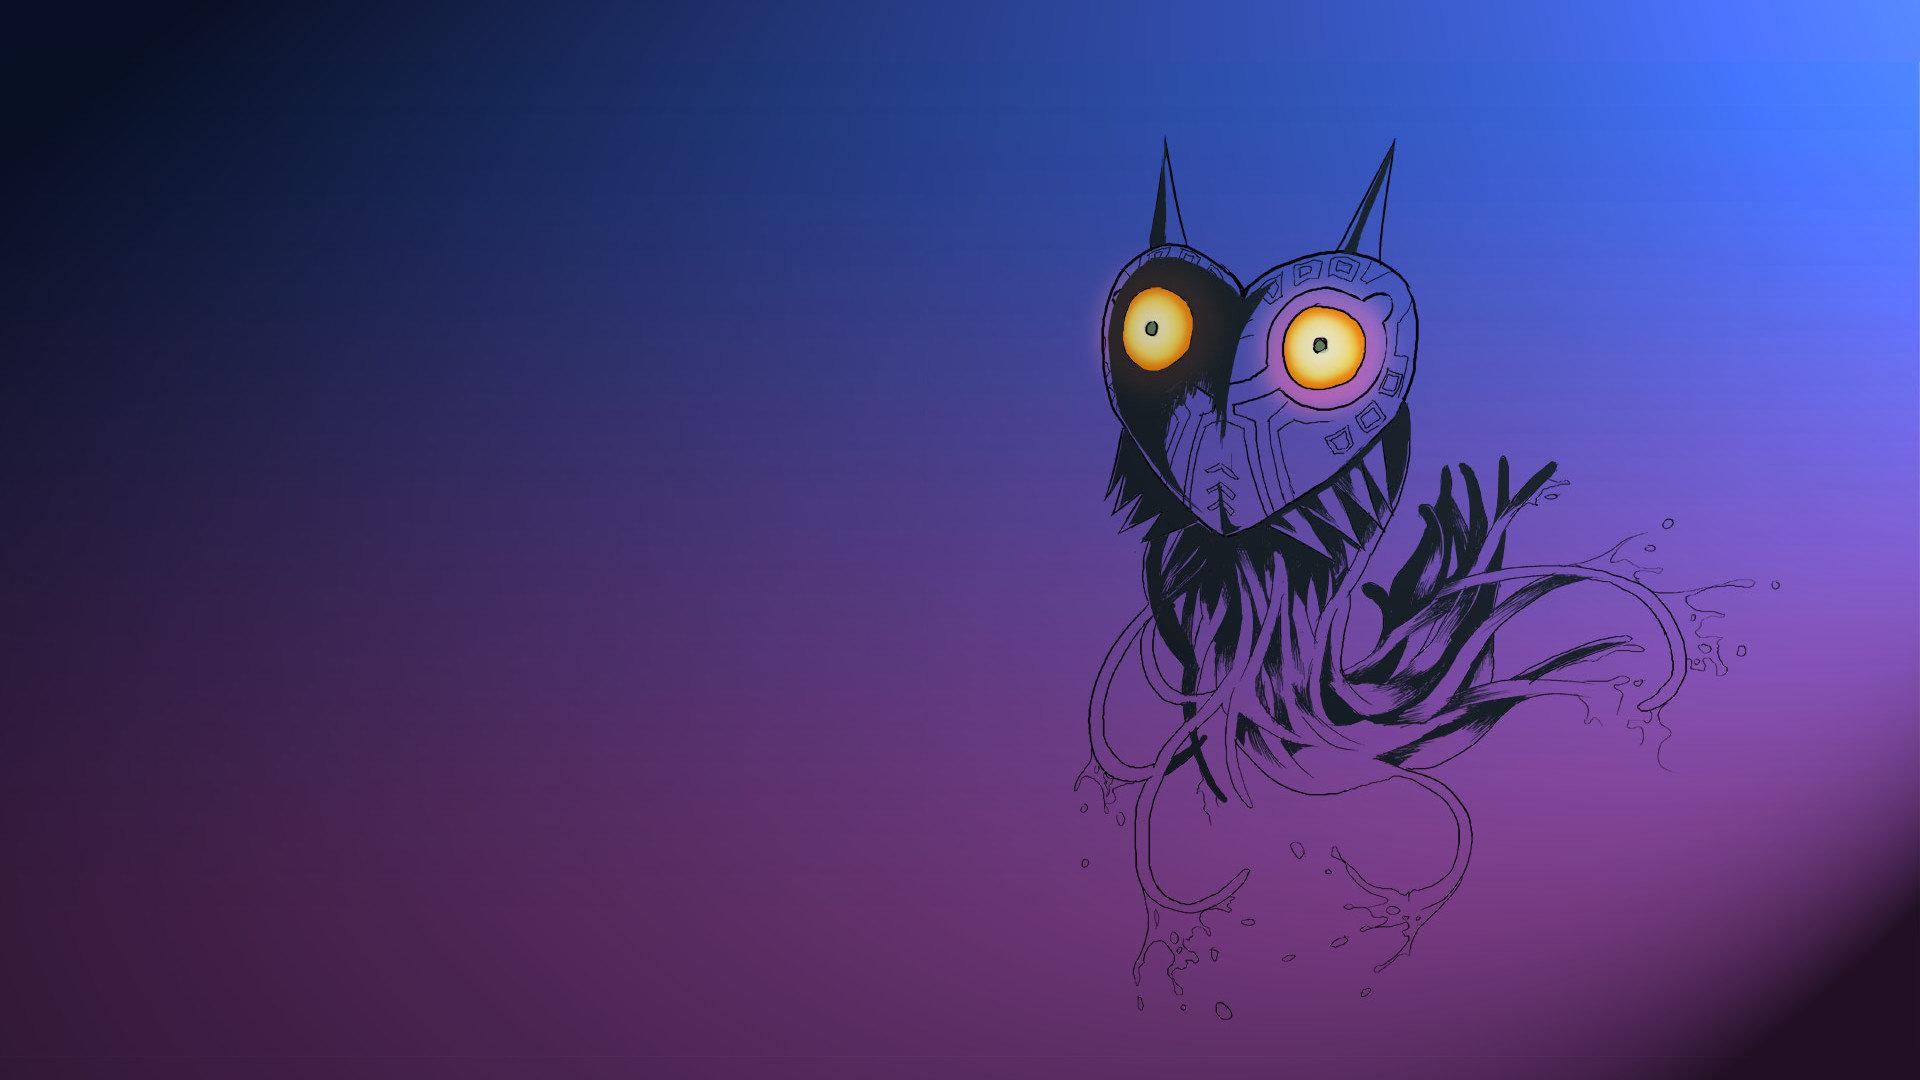 zelda wallpaper,owl,illustration,violet,animation,graphic design